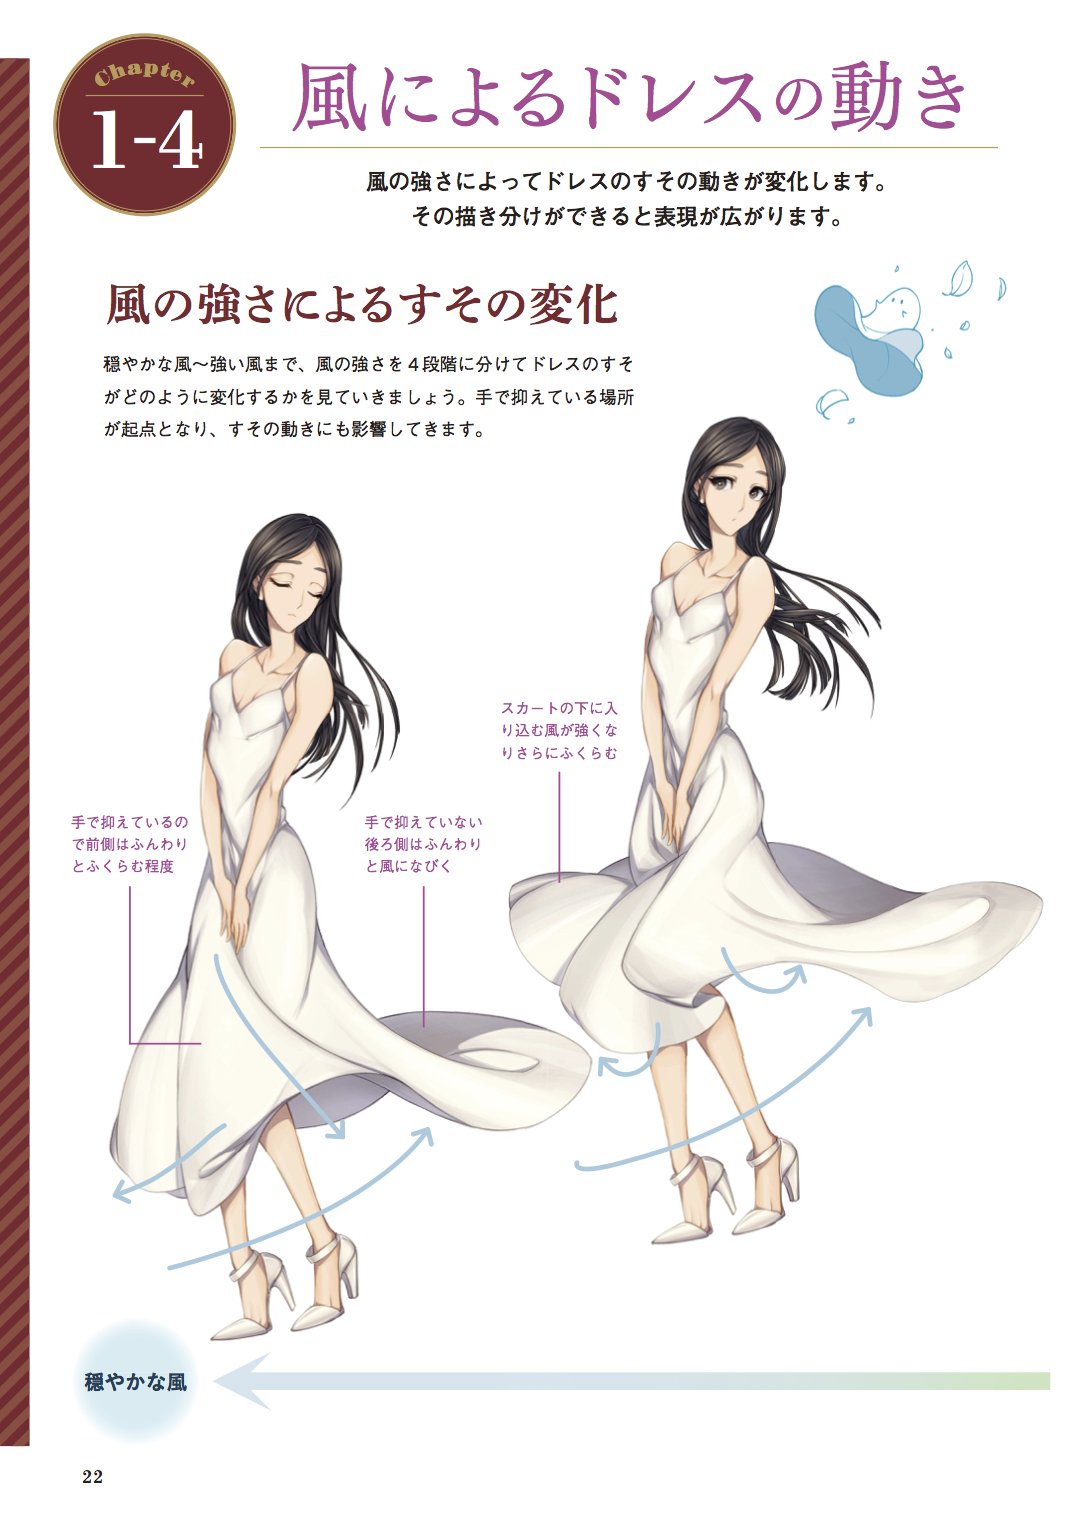 Twitter 上的 玄光社 超描けるシリーズ 超描ネタ帳 Kyachiさん Shirotumechika 著 ドレスの描き方 より 風に揺れるドレスの描き方 穏やかな風から強い風の4段階分けて 表現されています 風の流れを意識して 手の位置やすそや髪のなびき方を丁寧に描き